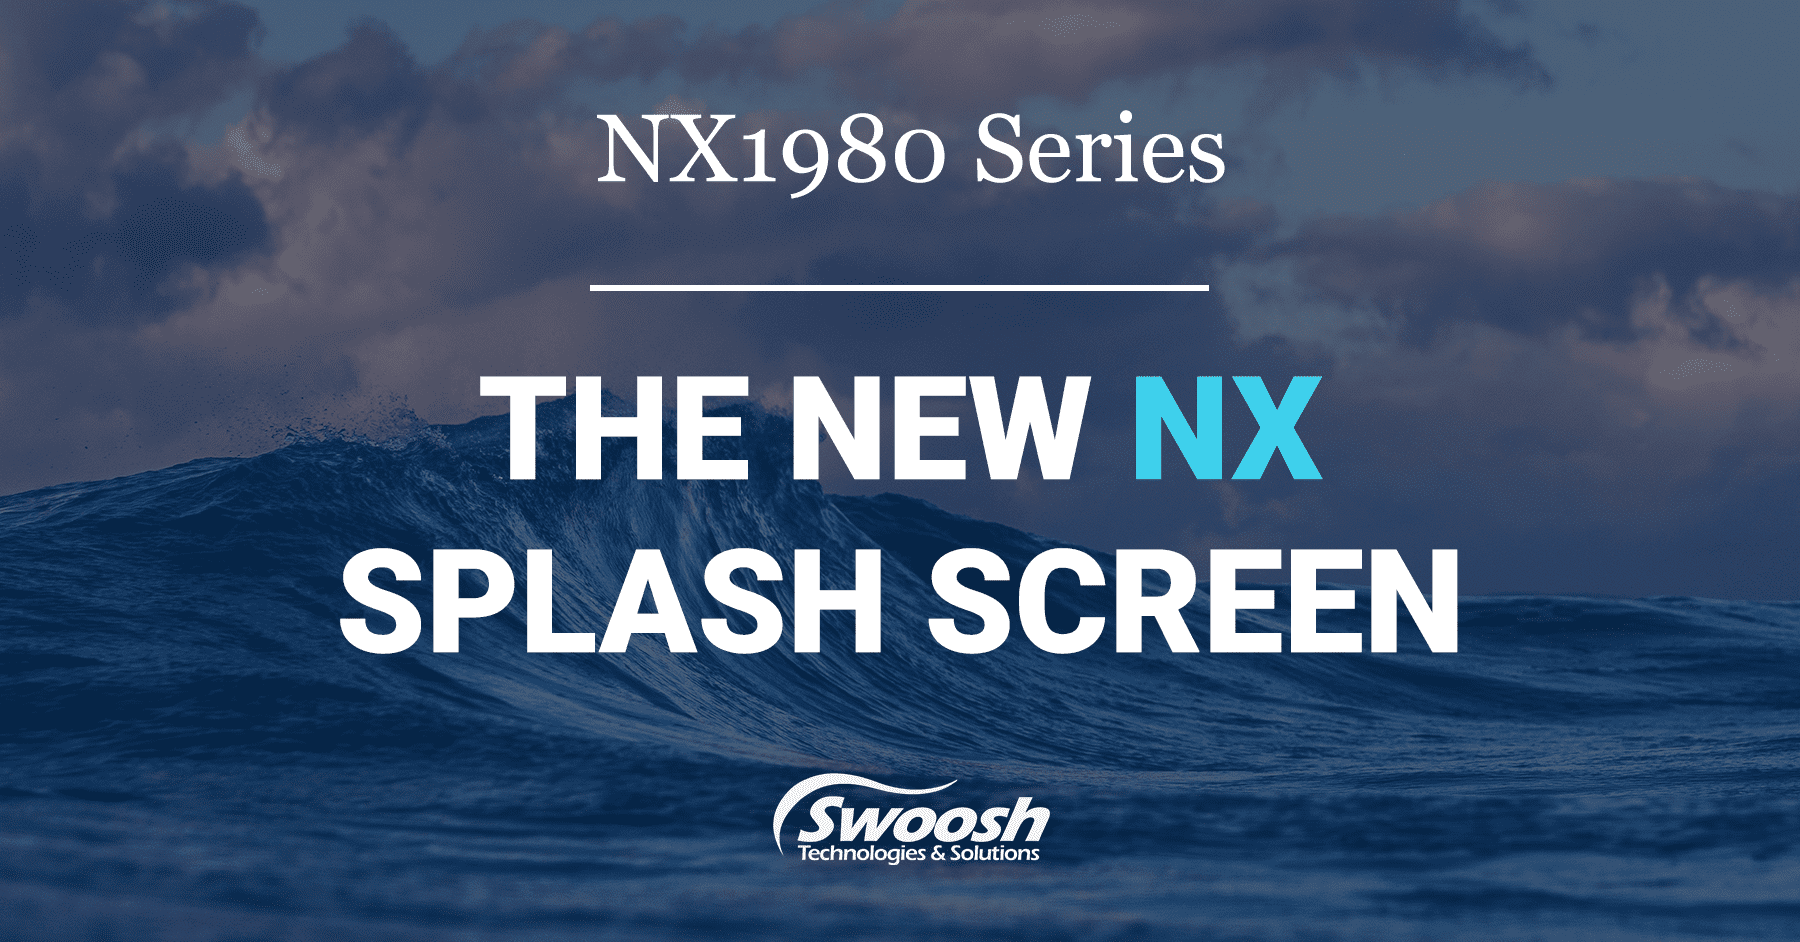 NX 1980 Series: New NX Splash Screen